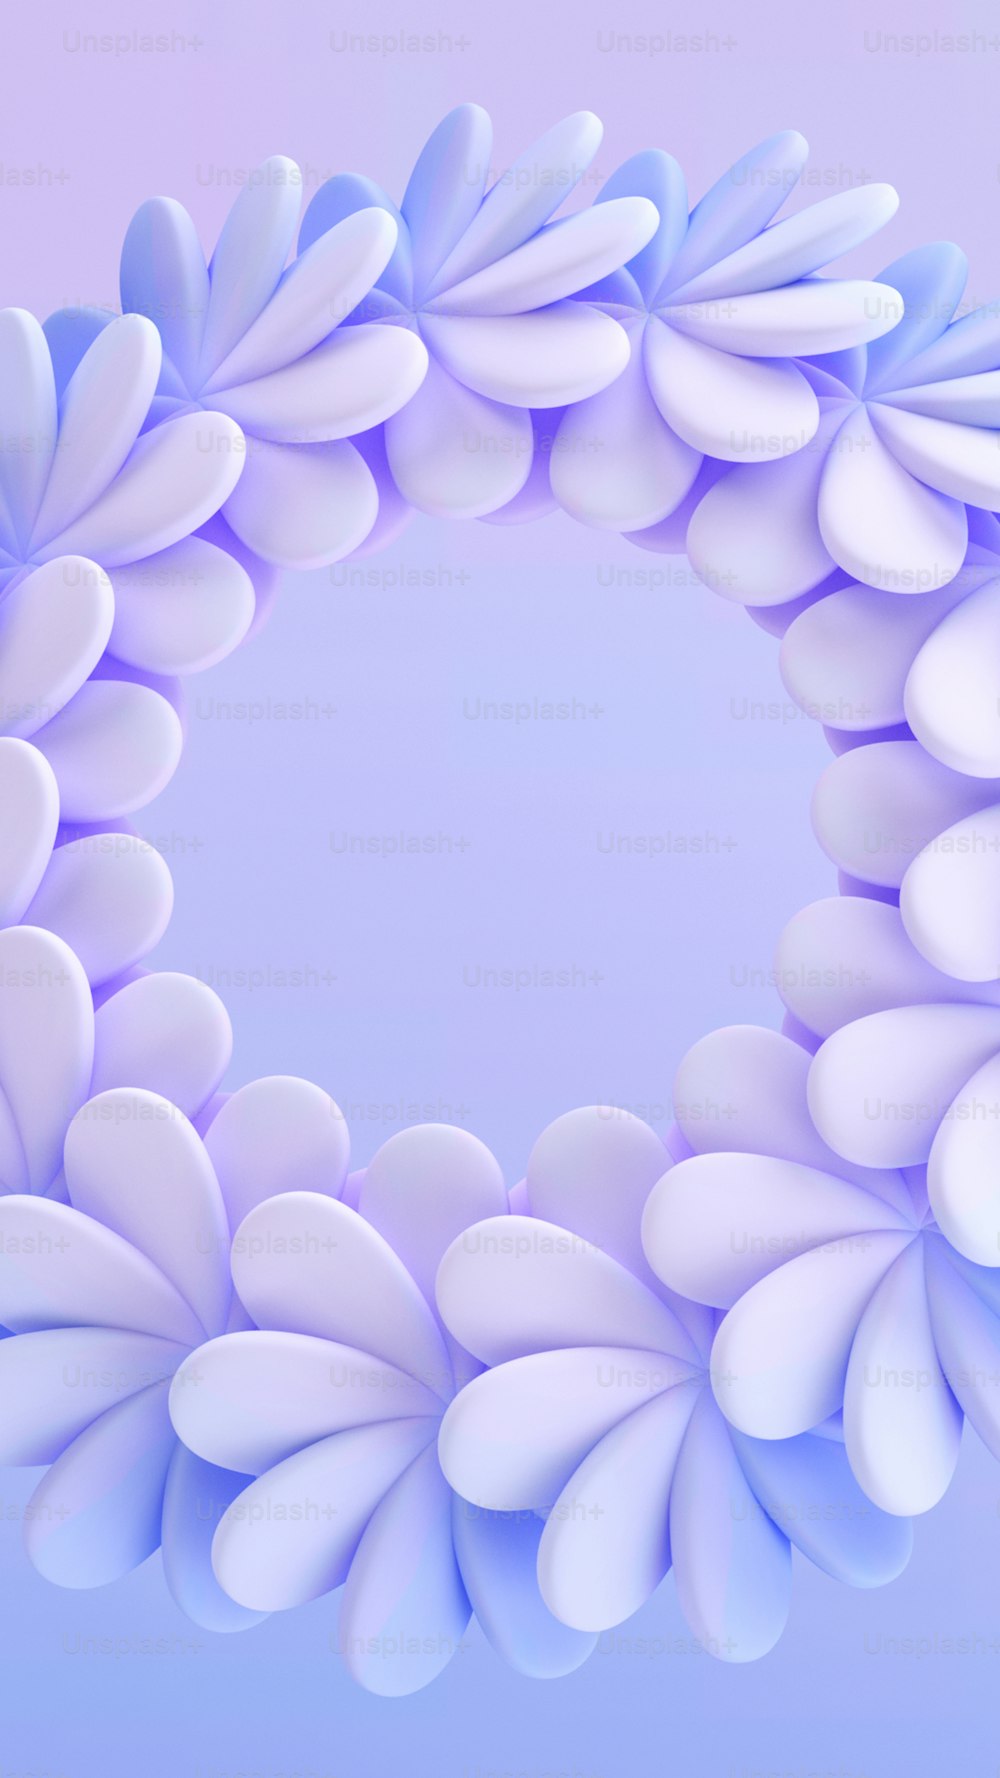 un oggetto circolare blu e bianco con petali bianchi